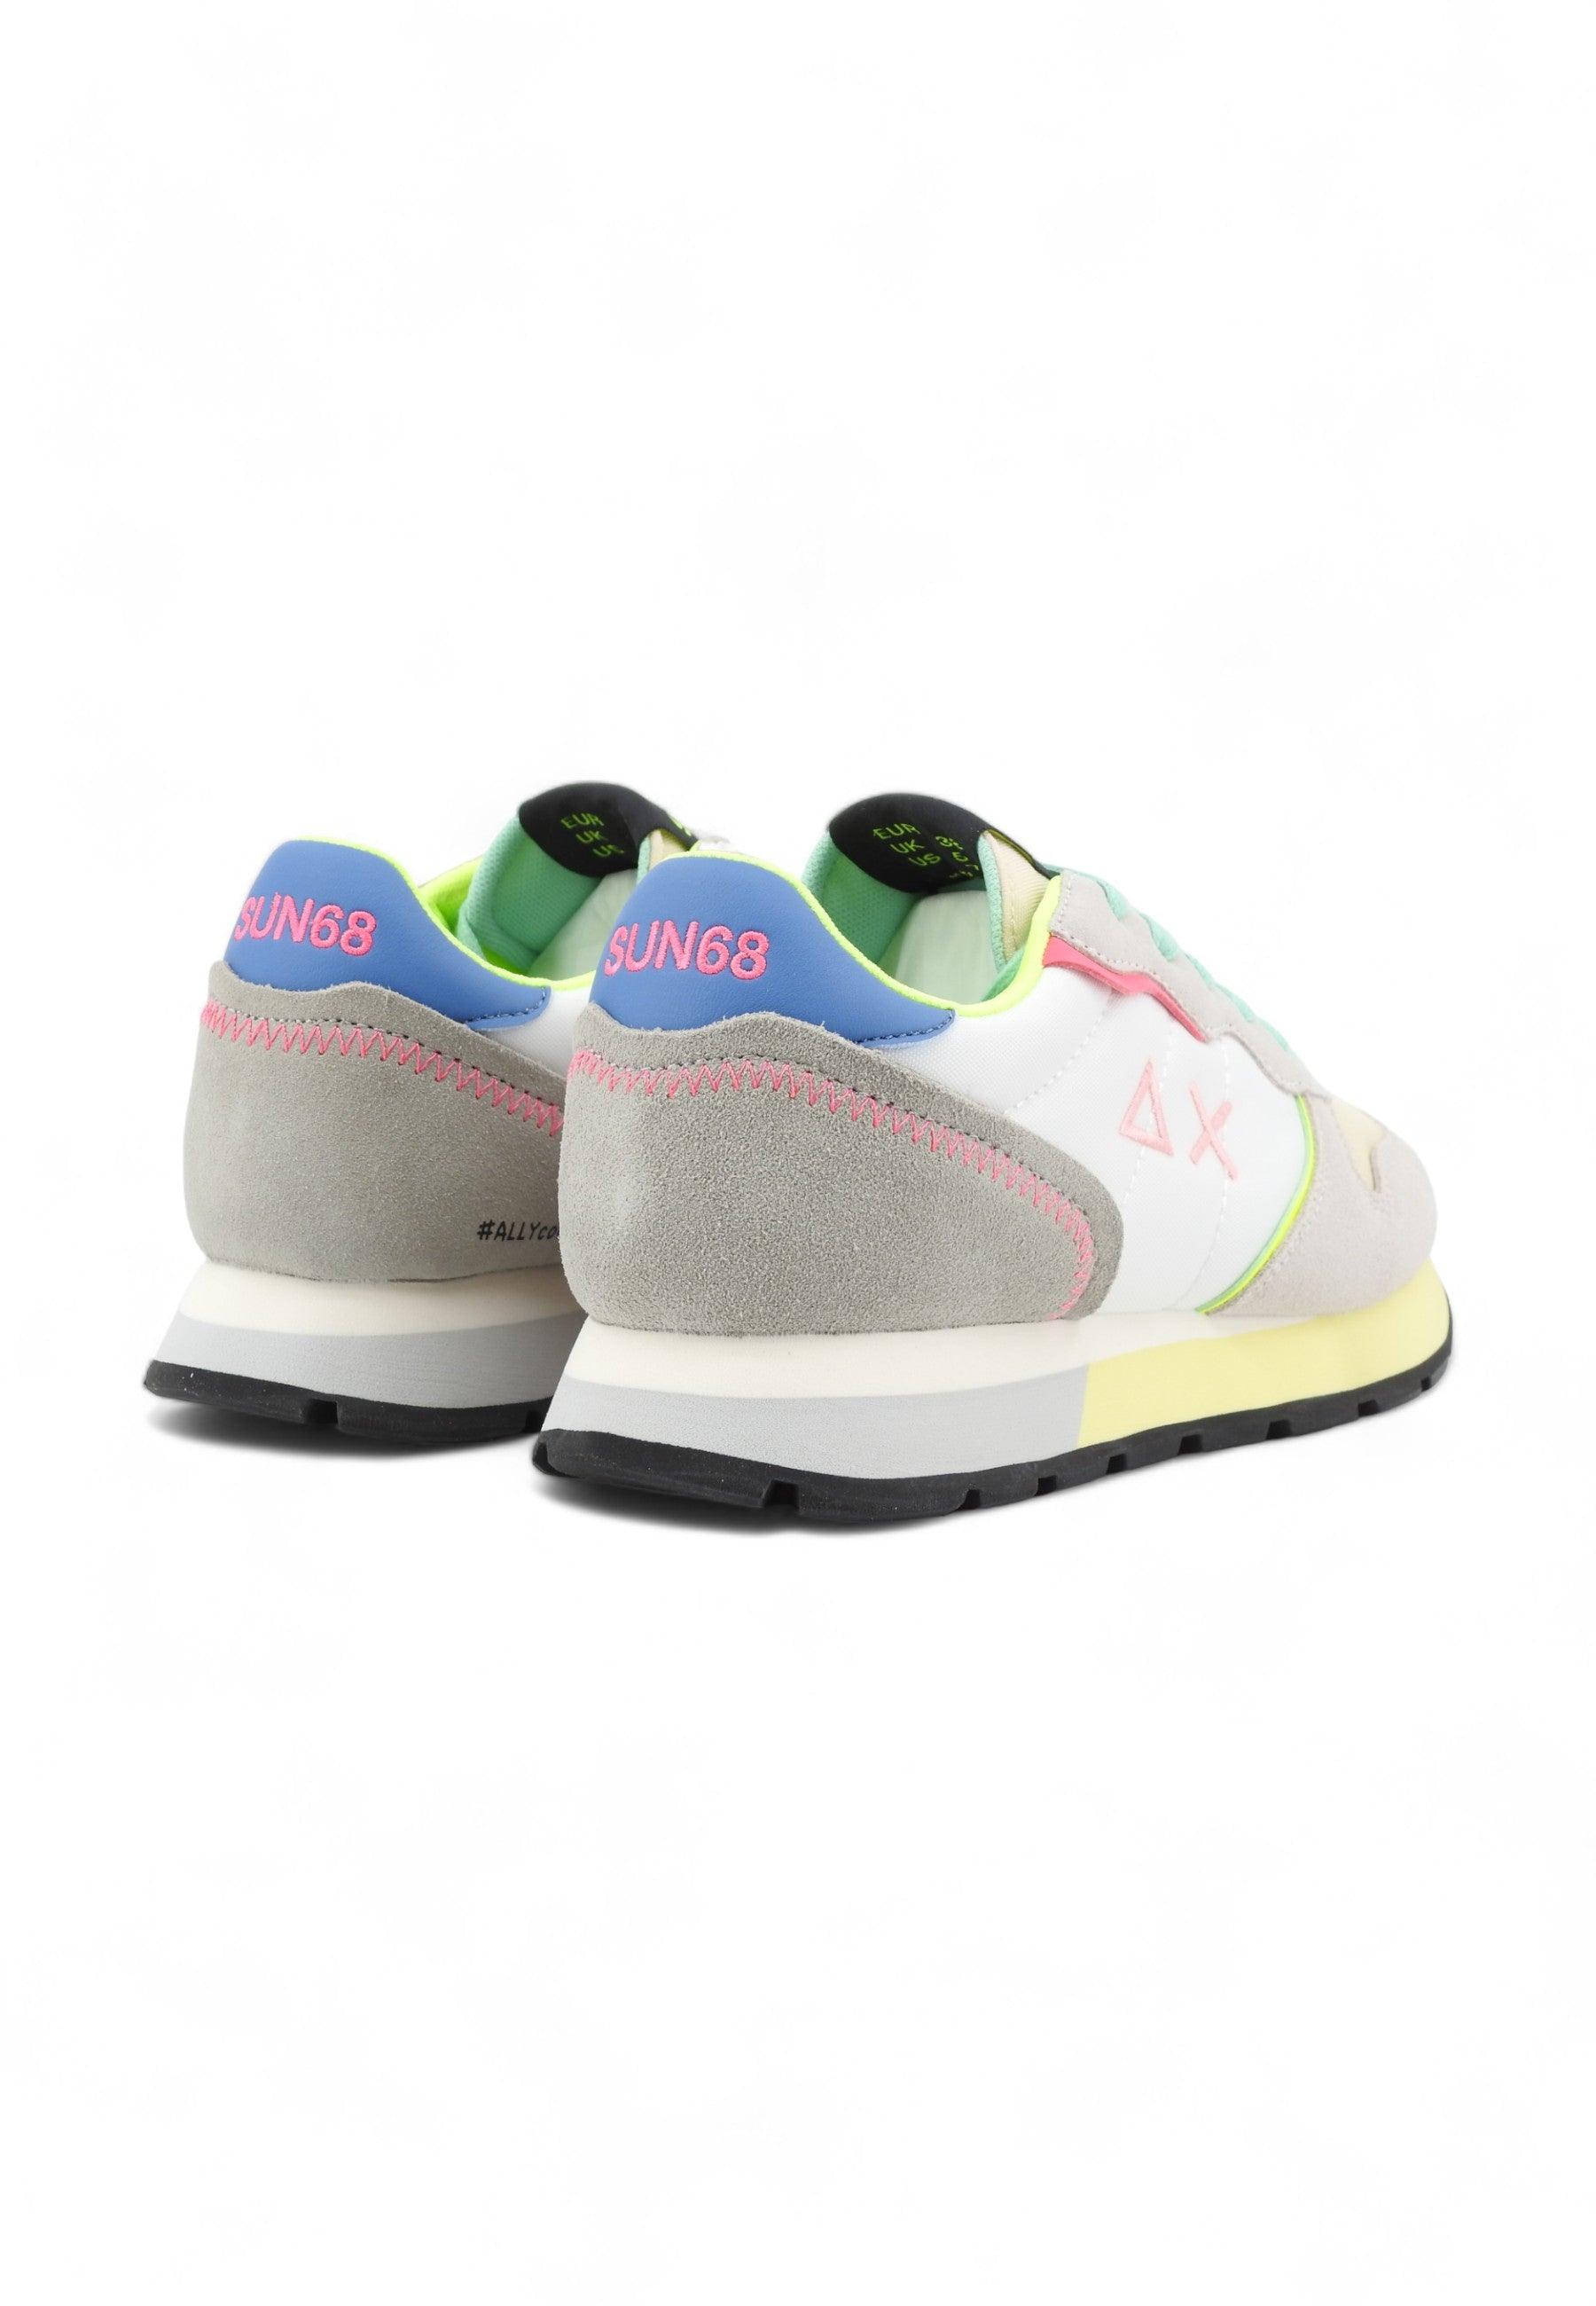 SUN68 Ally Color Sneaker Donna Bianco Z34204 - Sandrini Calzature e Abbigliamento